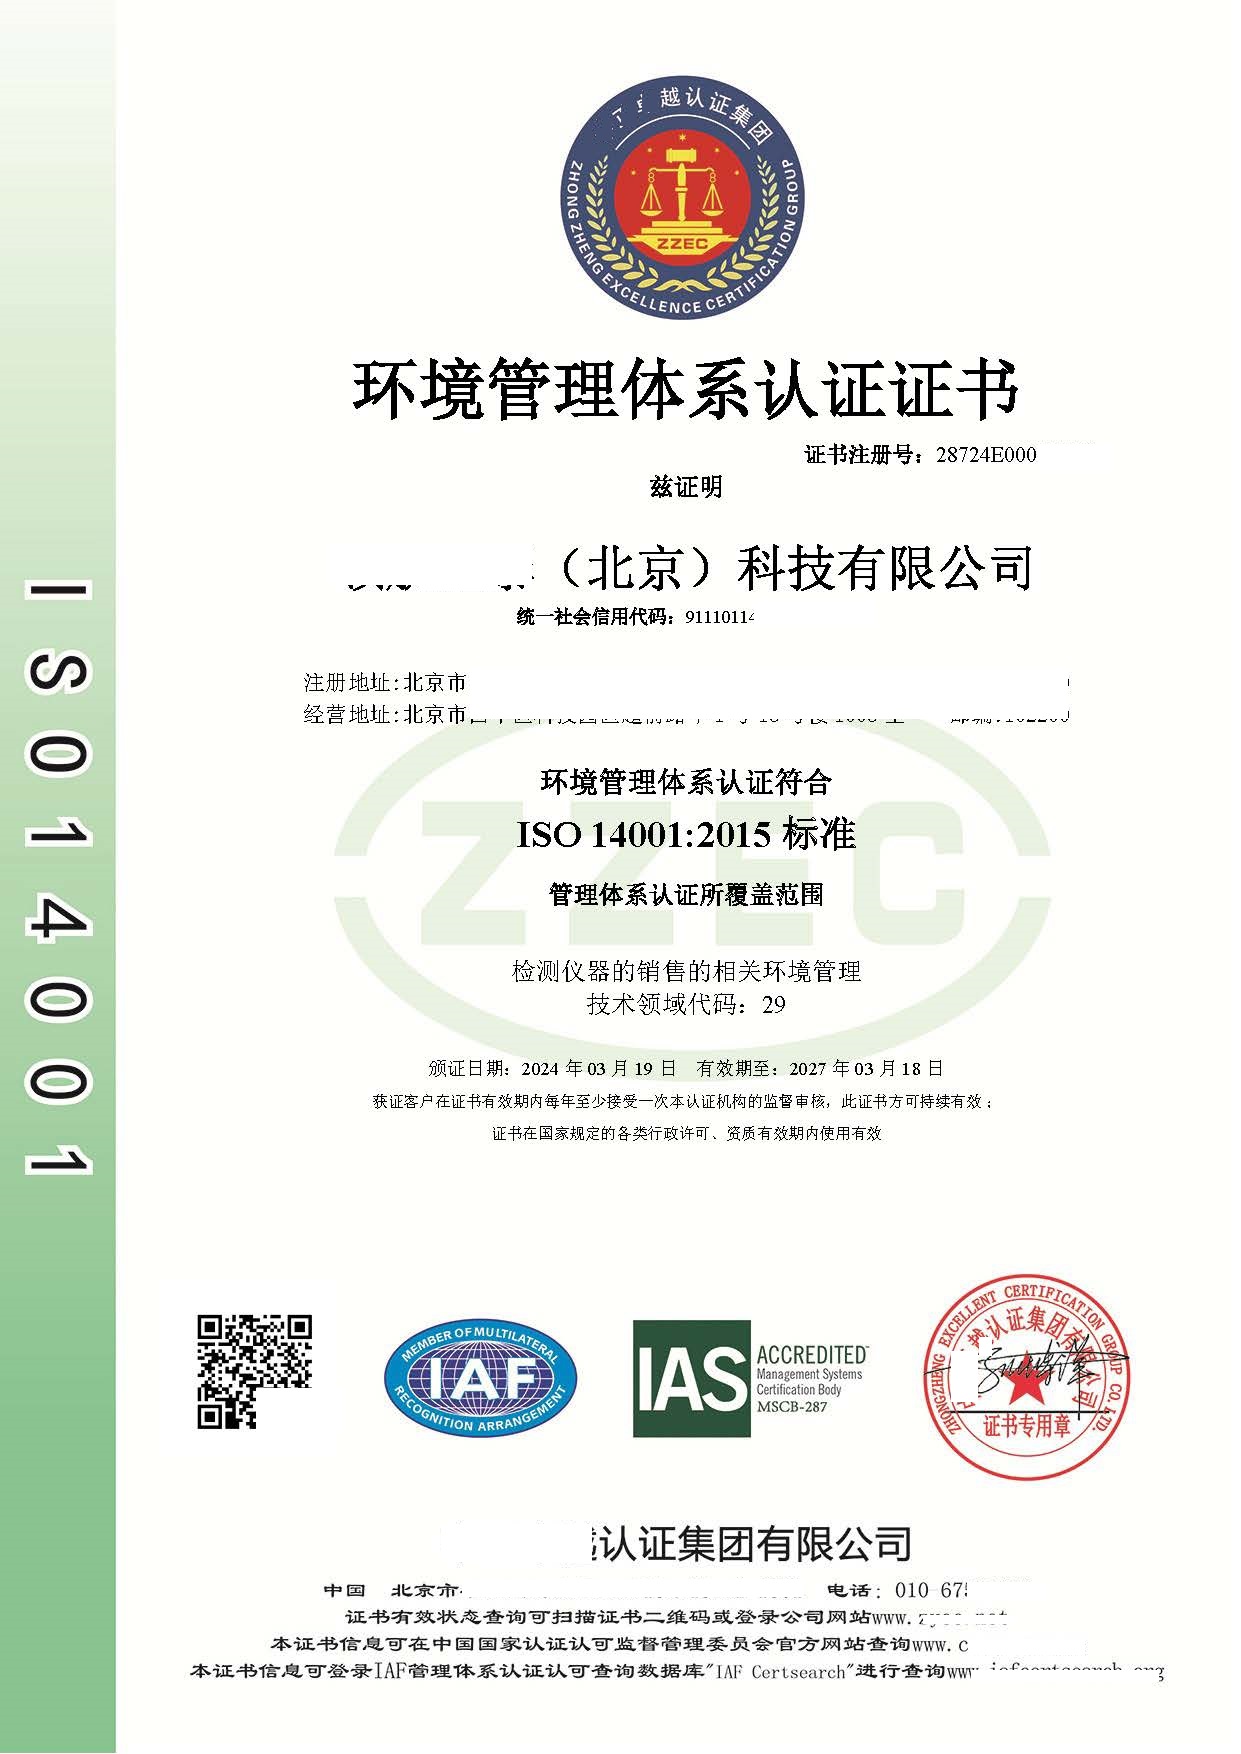 恭喜  ****（北京）科技有限公司  获得ISO9001质量、ISO14001环境、ISO45001职业健康安全管理体系认证证书